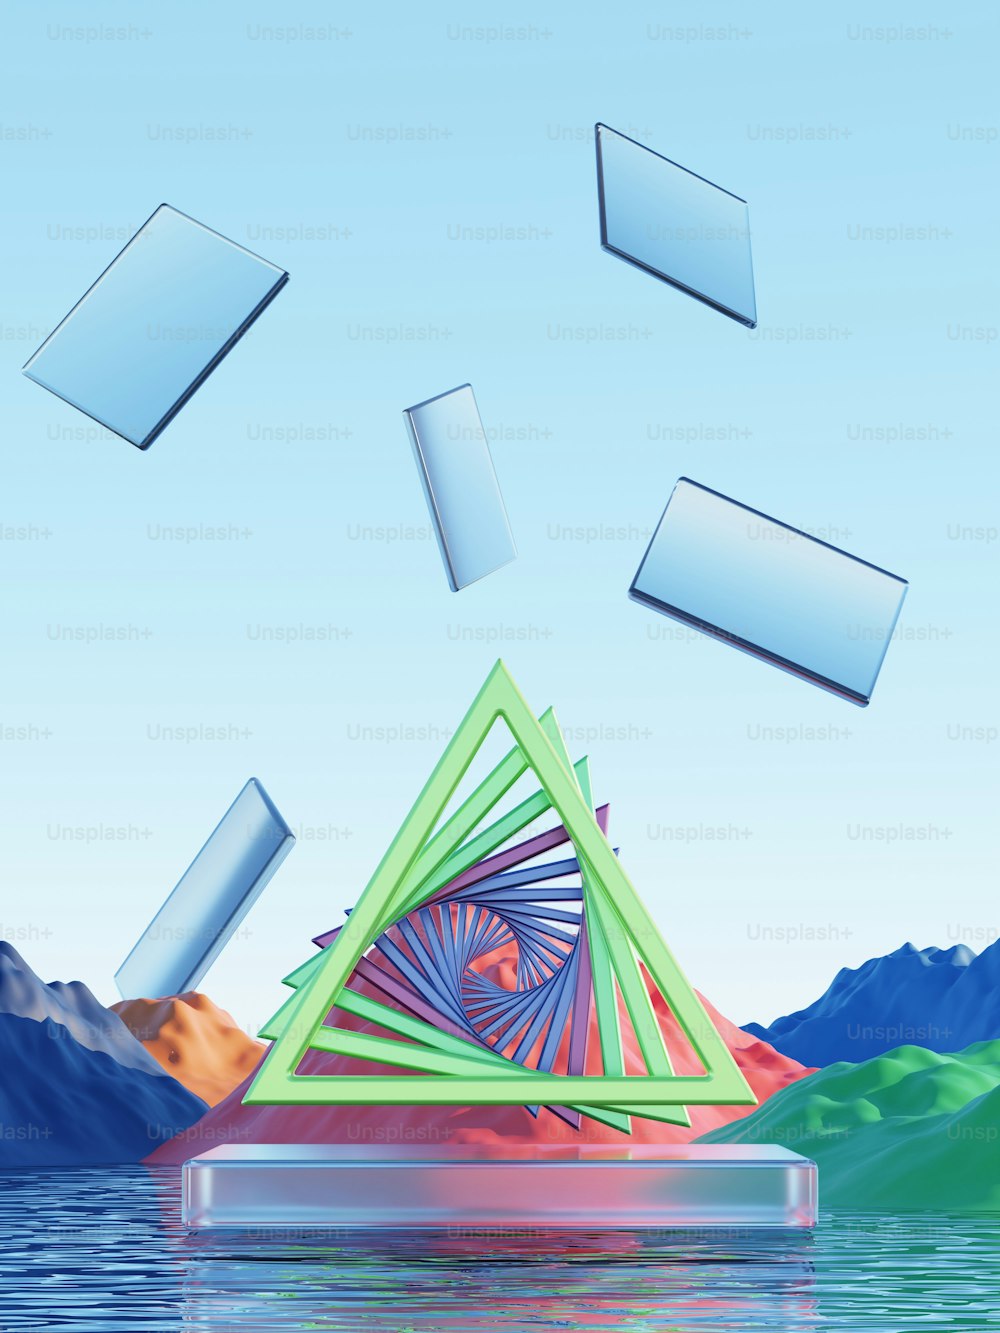 uma imagem gerada por computador de uma pirâmide flutuando na água